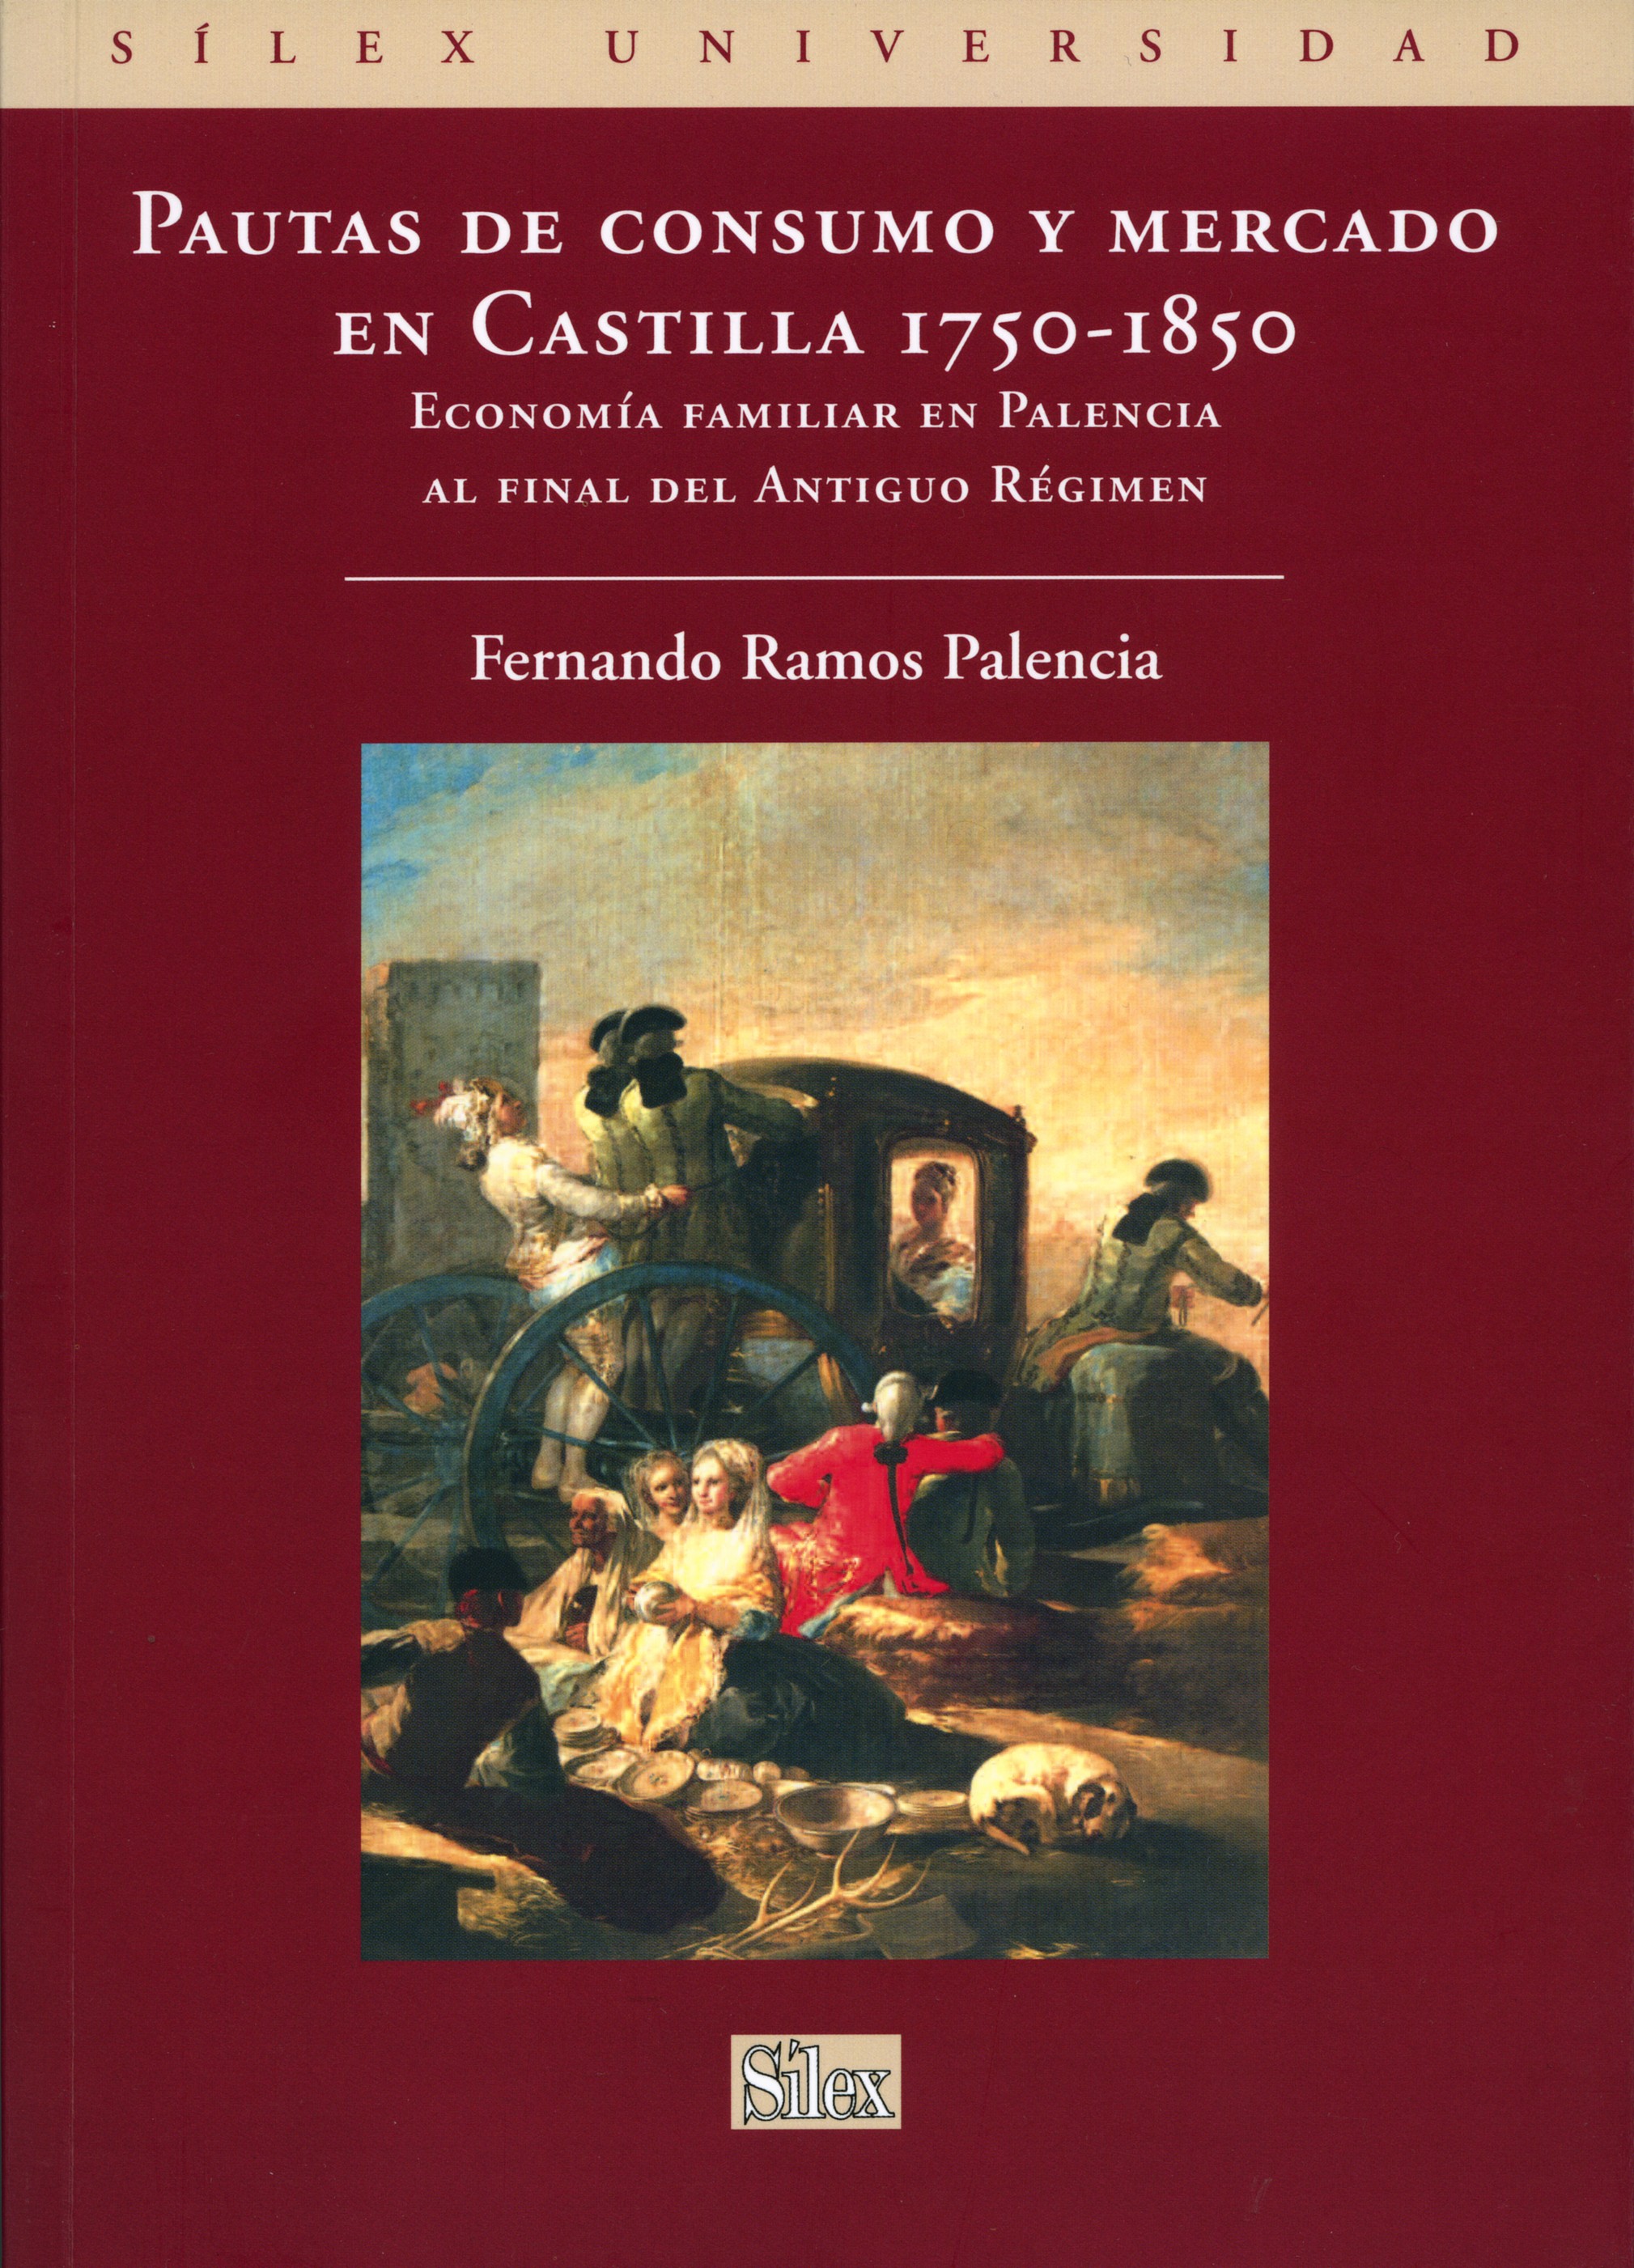 Pautas de consumo y mercado en Castilla 1750-1850